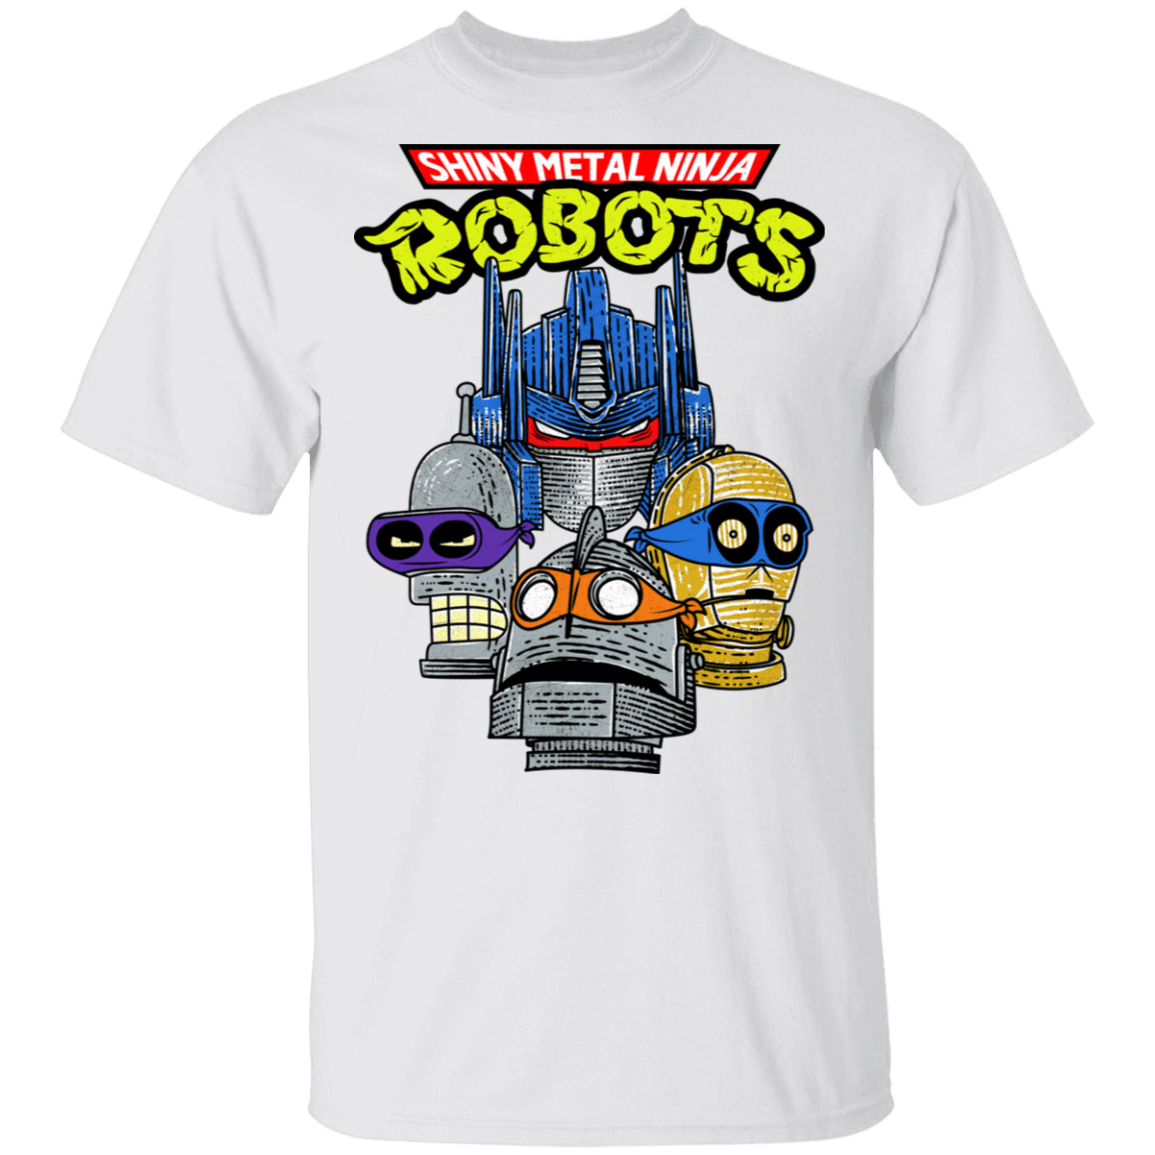 T-Shirts White / S Shiny Metal Ninja Robots T-Shirt